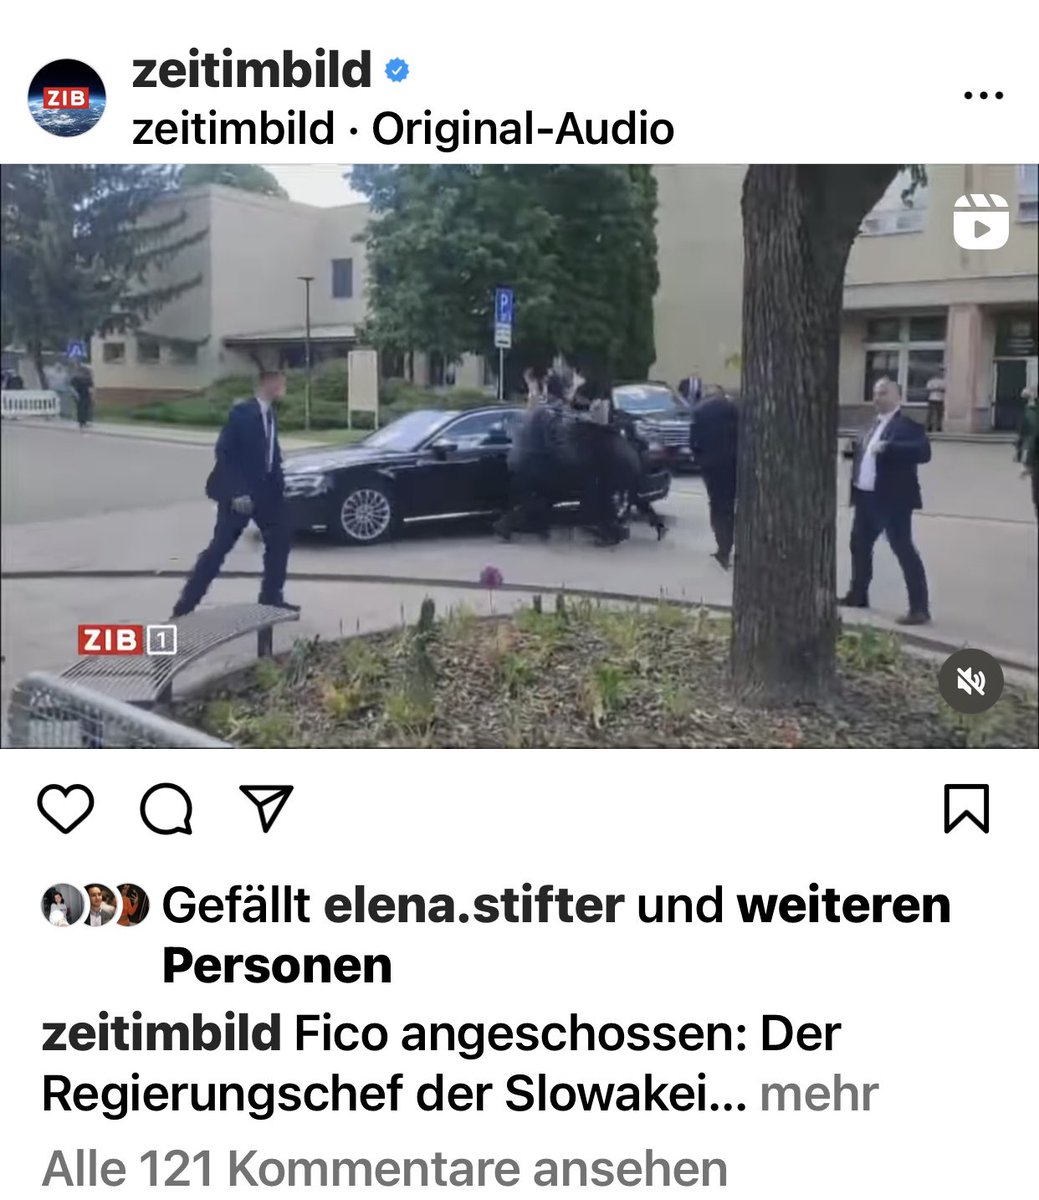 In Österreichs Öffentlich Rechtlichem Rundfunk (@ORF ) blieb dieser User-Kommentar bisher online: #Fico hätte „schon früher“ niedergeschossen werden sollen …
Und das bei fast einer Milliarde Euro Zwangsgebühr.